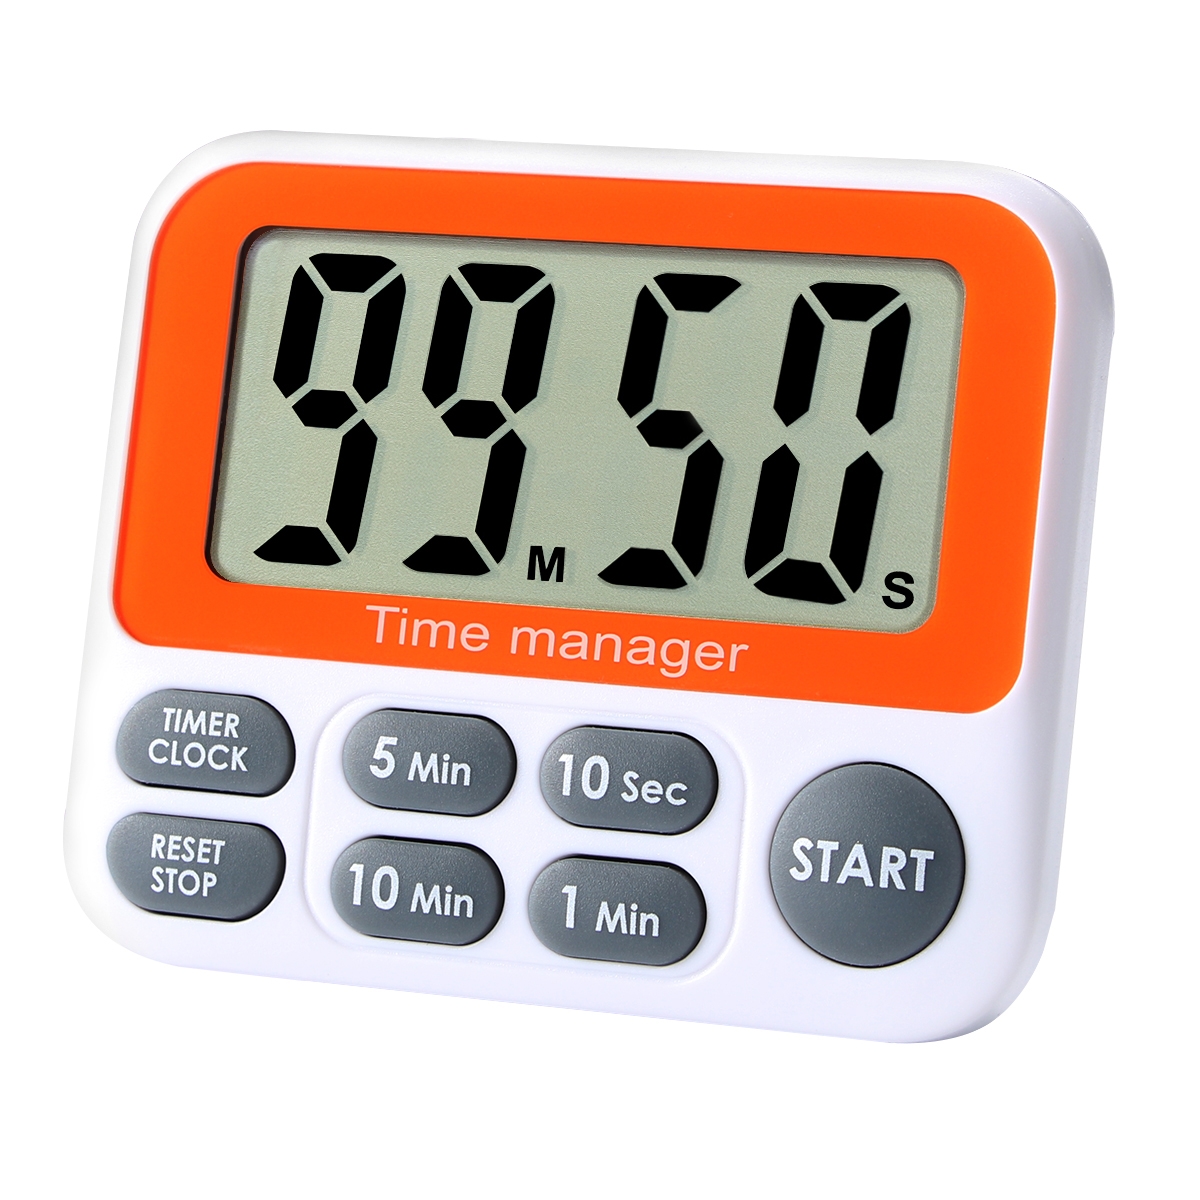 AIMILAR Fast Setting Digital Kitchen Timer Clock AY4047-Gray